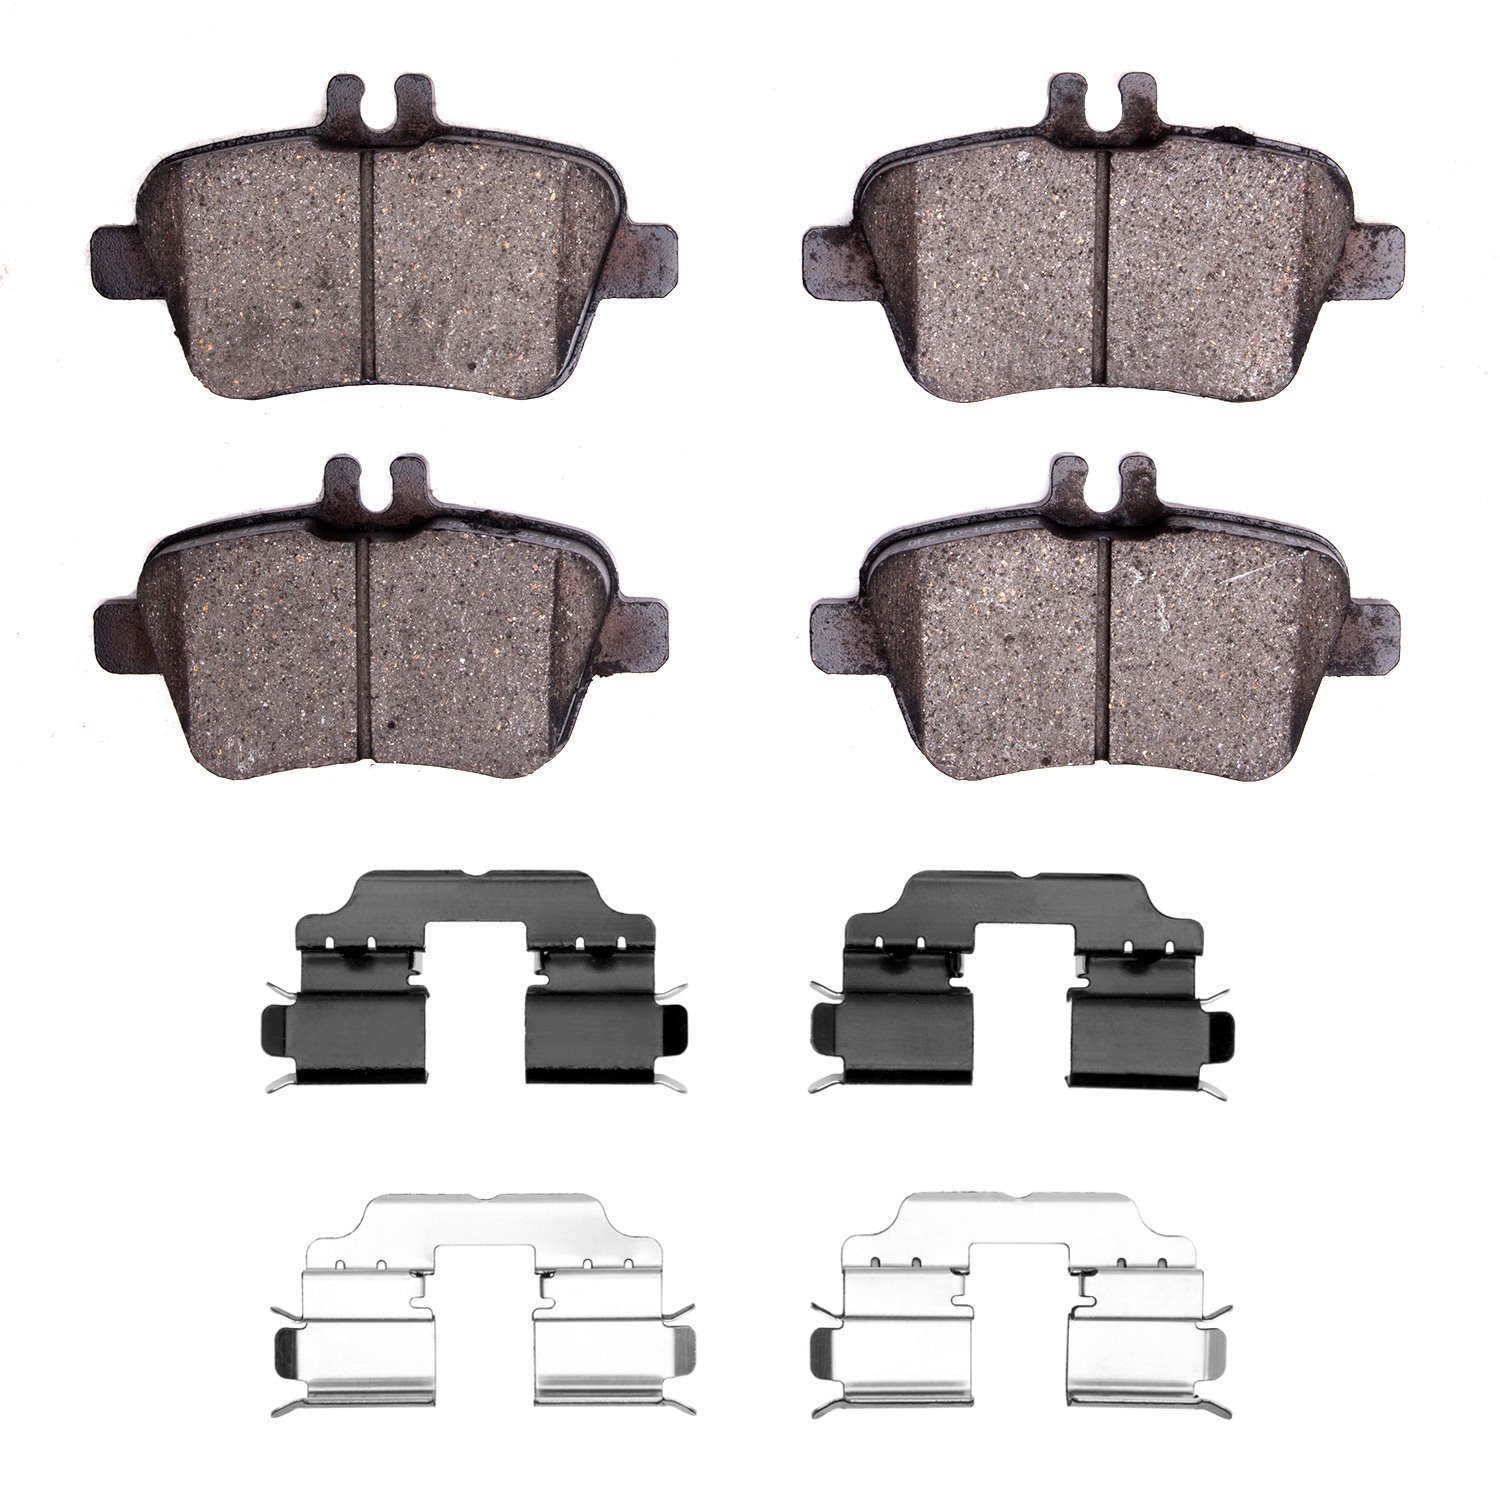 1310-1646-02 3000-Series Ceramic Brake Pads & Hardware Kit, 2014-2019 Mercedes-Benz, Position: Rear